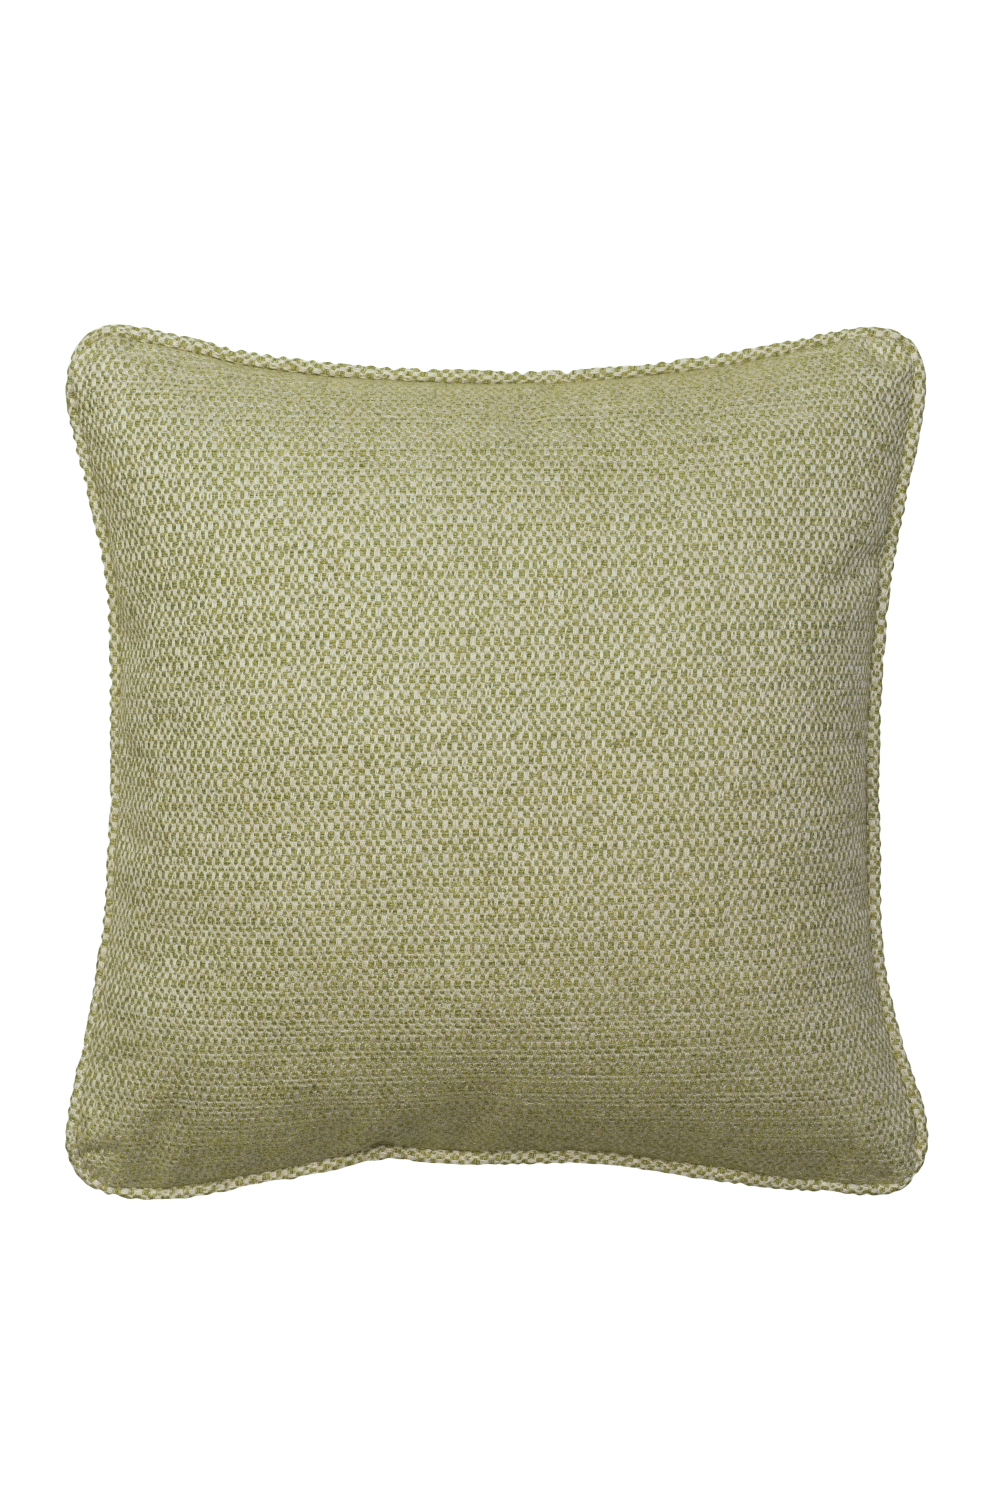 Woven Linen Cushion | Andrew Martin Jetty | Oroa.com